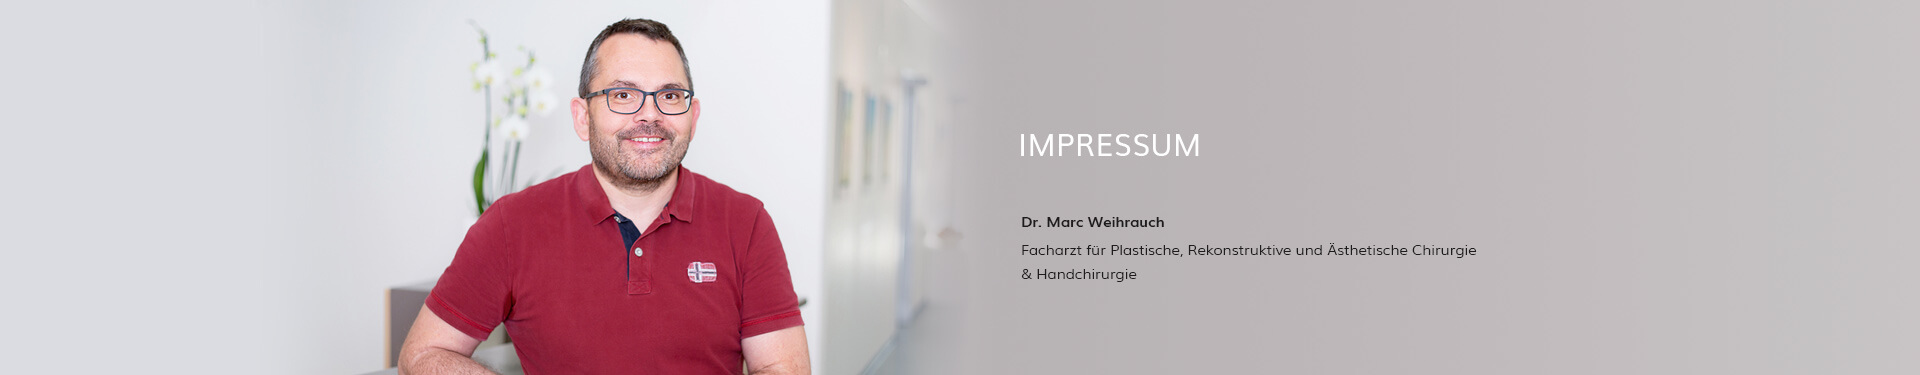 Impressum Dr. Weihrauch, Plastische Chirurgie in Karlsruhe 